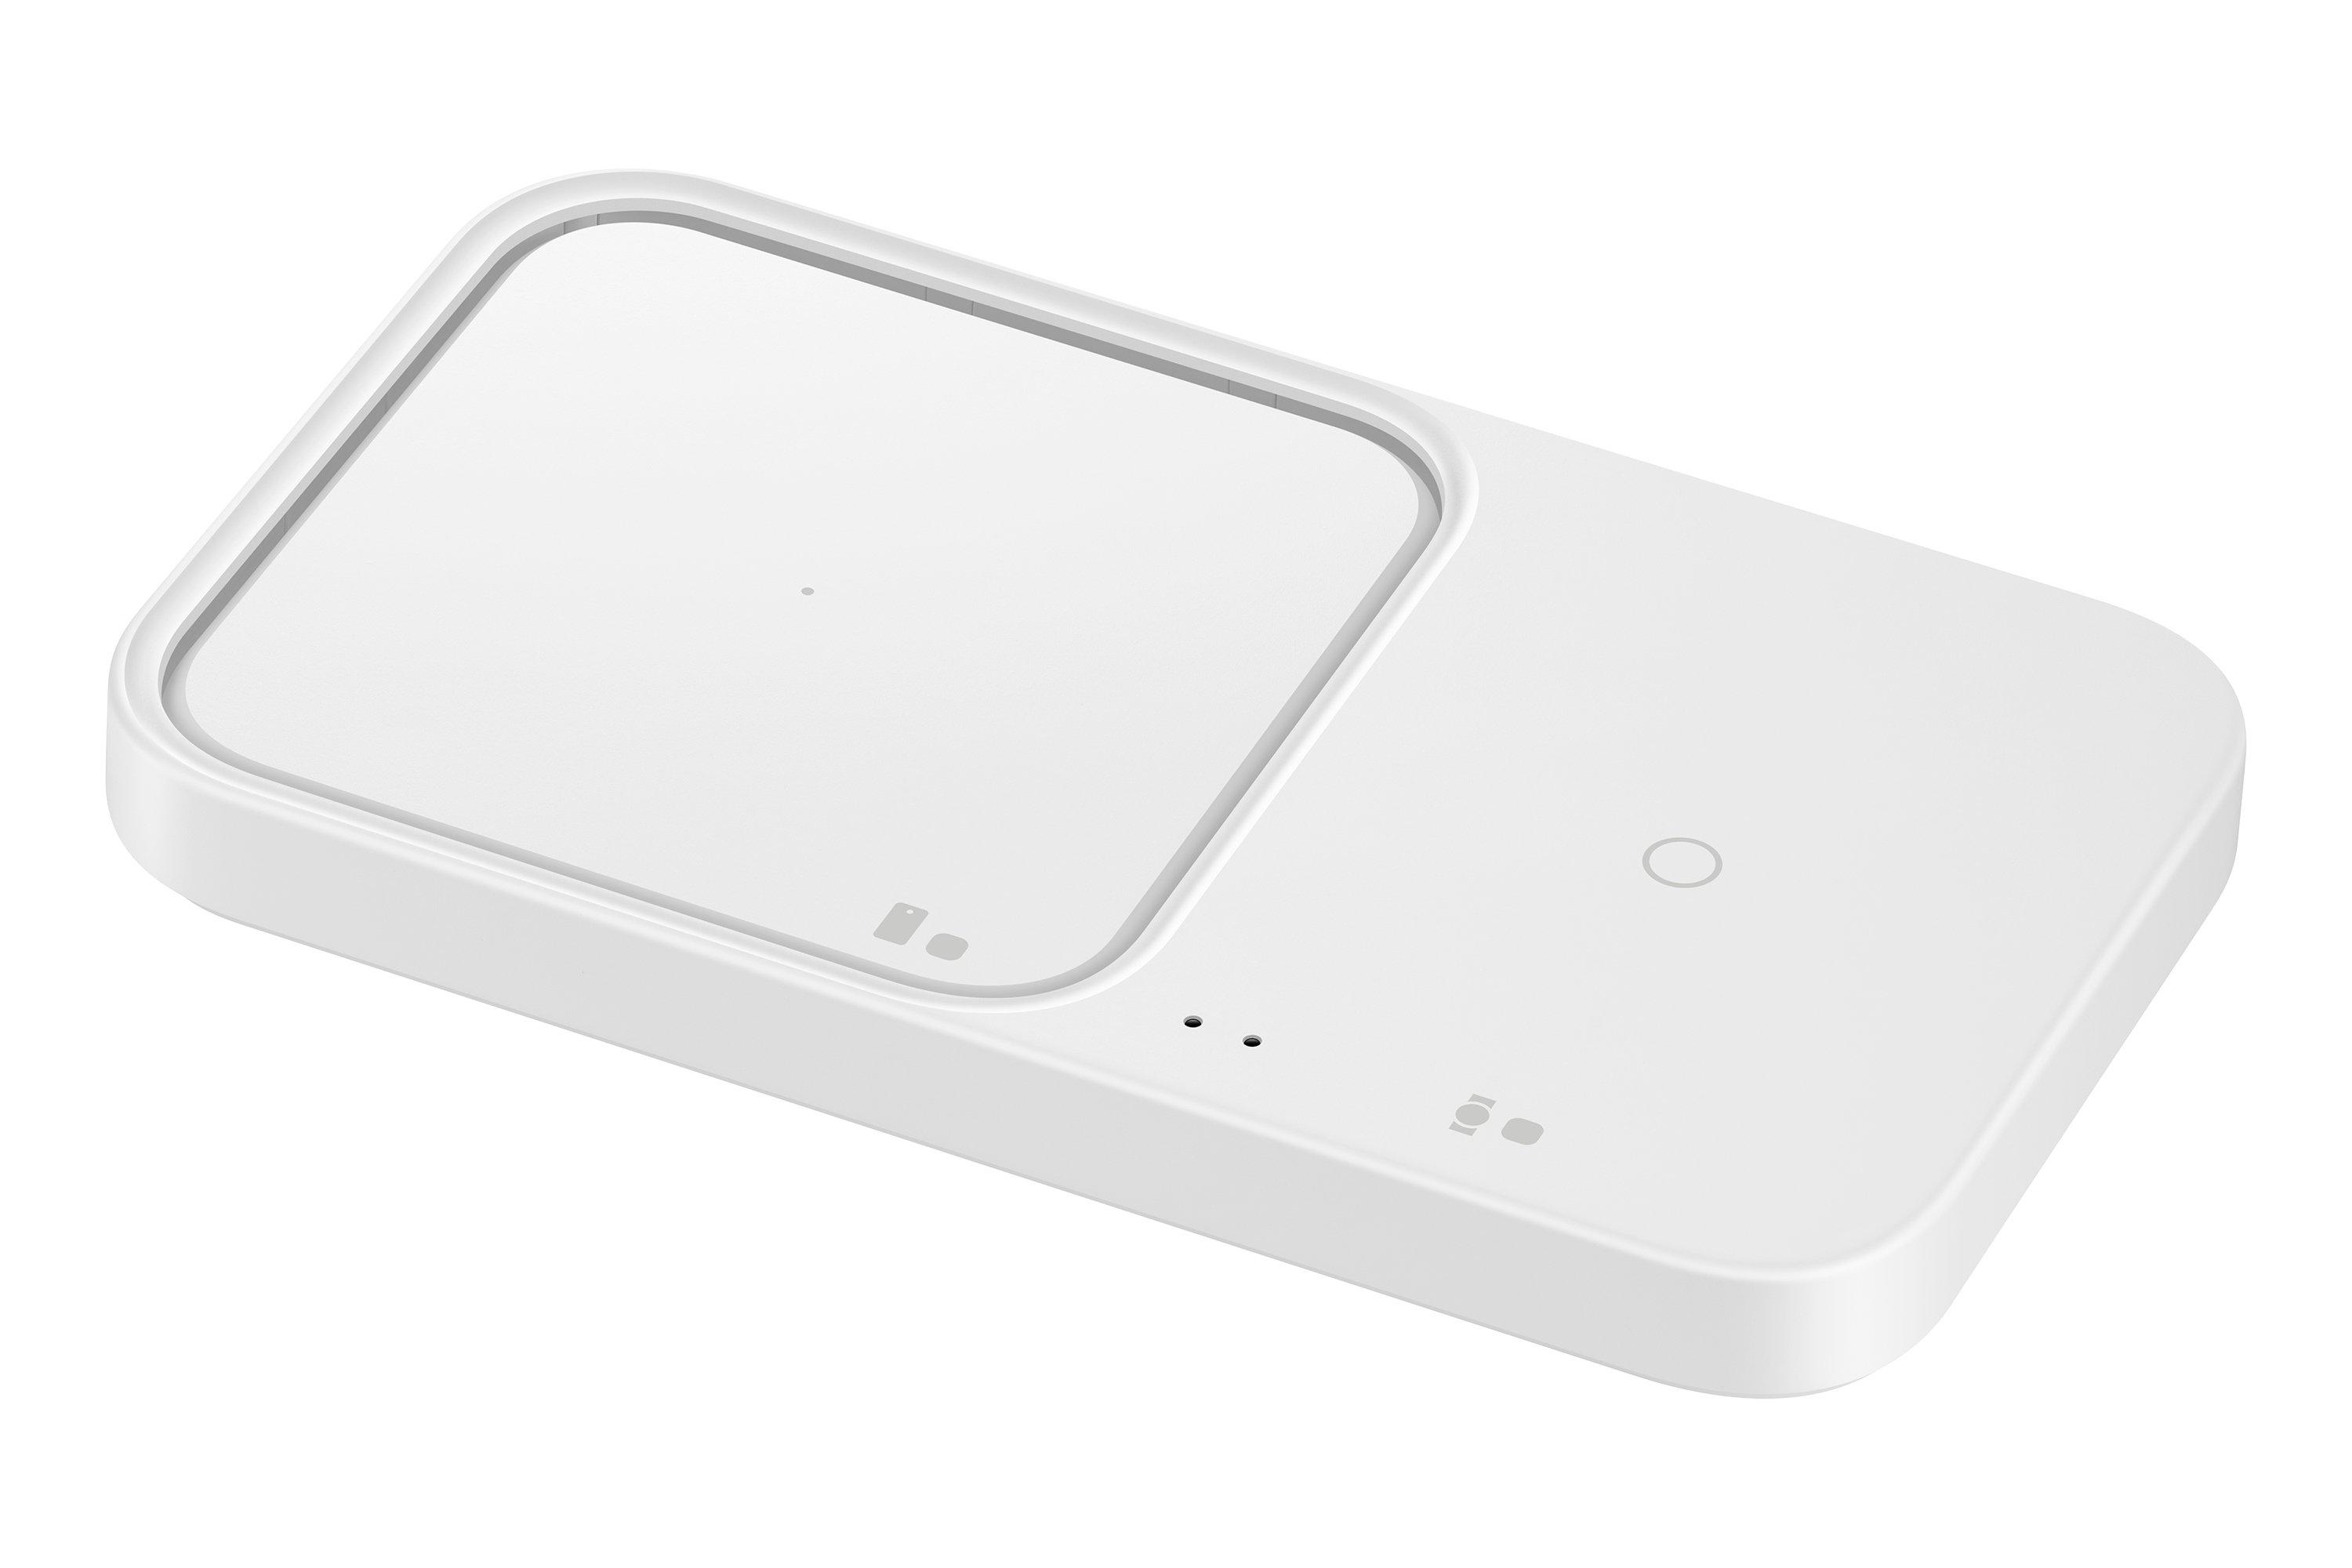 SAMSUNG  EP-P5400 Kopfhörer, Smartphone, Smartwatch Weiß USB Kabelloses Aufladen Indoor 